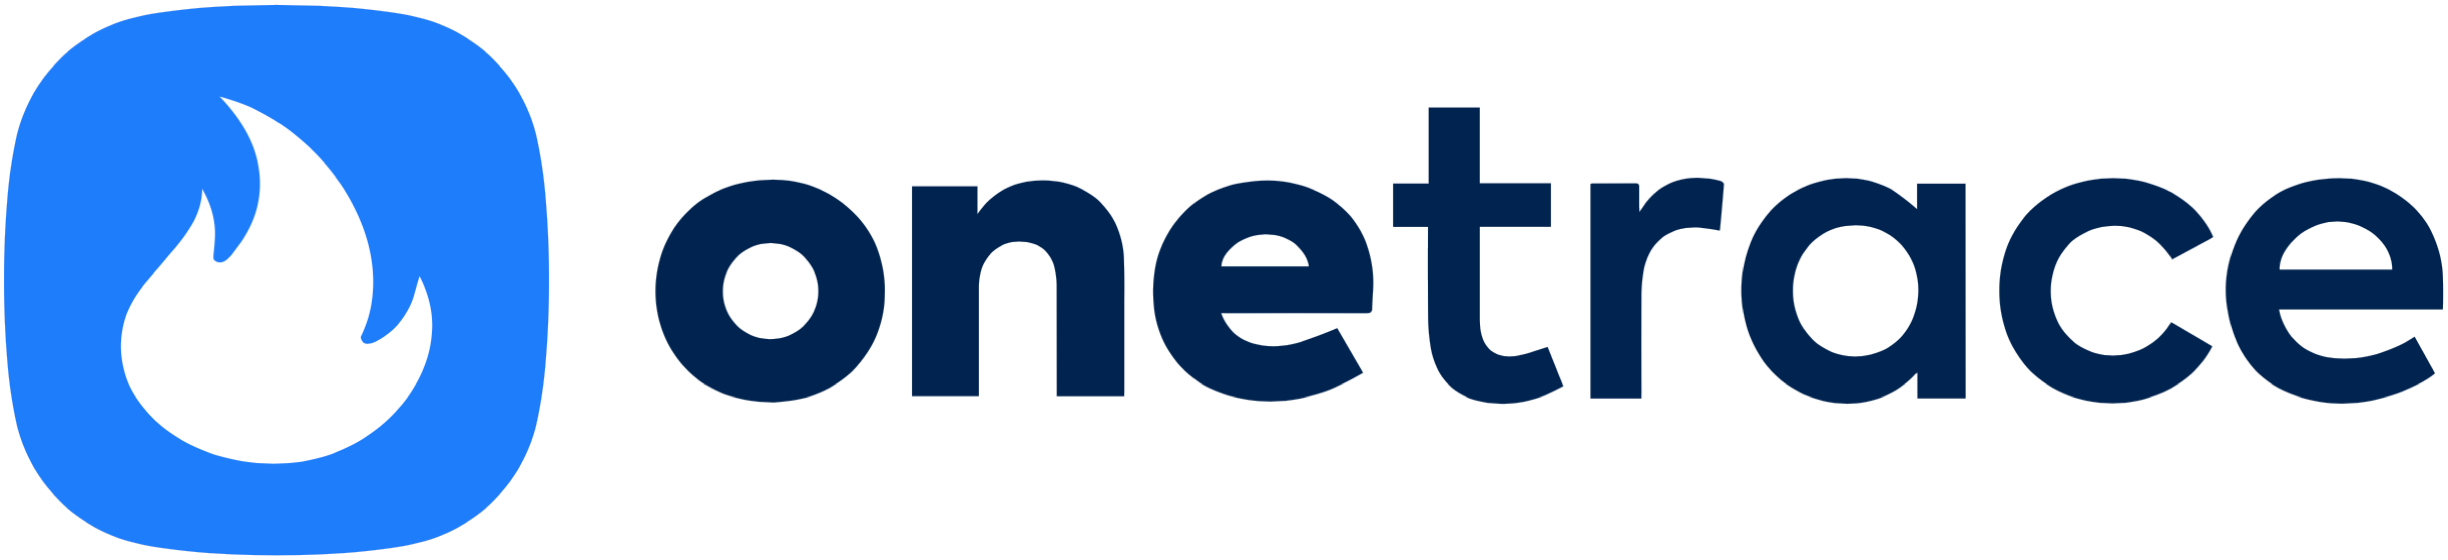 Onetrace Company Logo